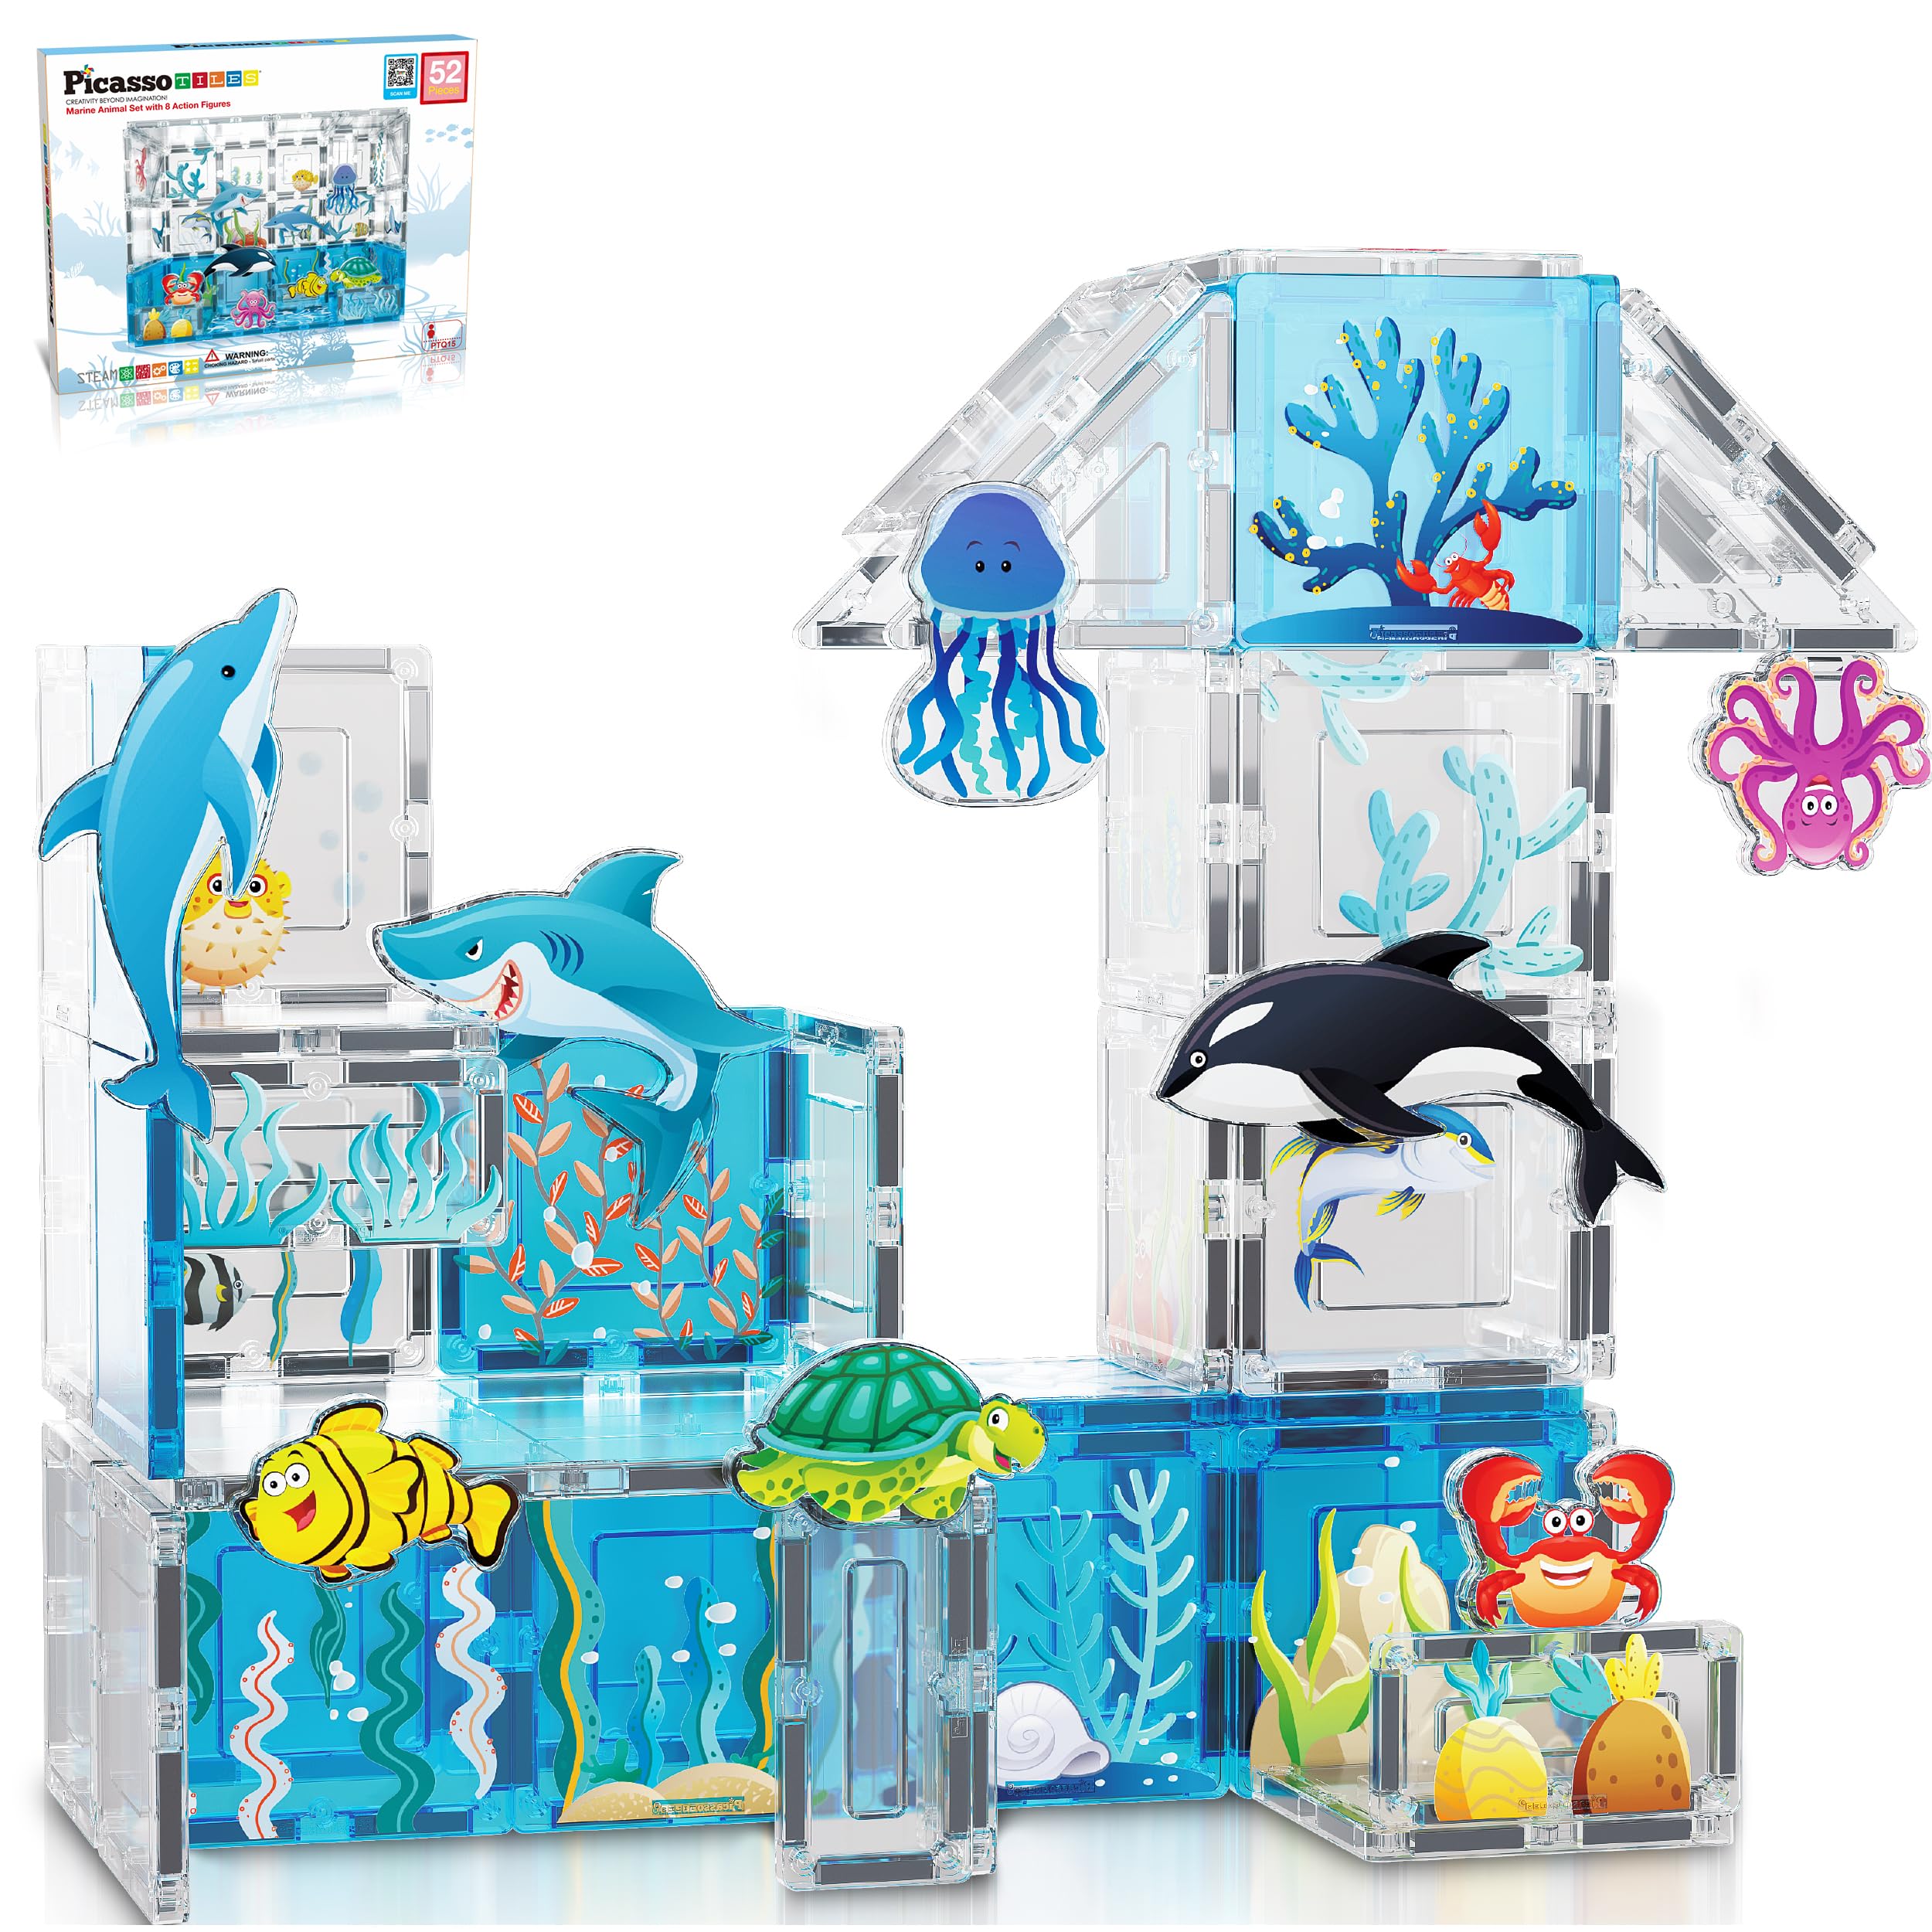 PicassoTiles Magnet Tile Building Blocks Aquarium Marine Animal Theme Set with 8 Character Action Figures STEM Construction M